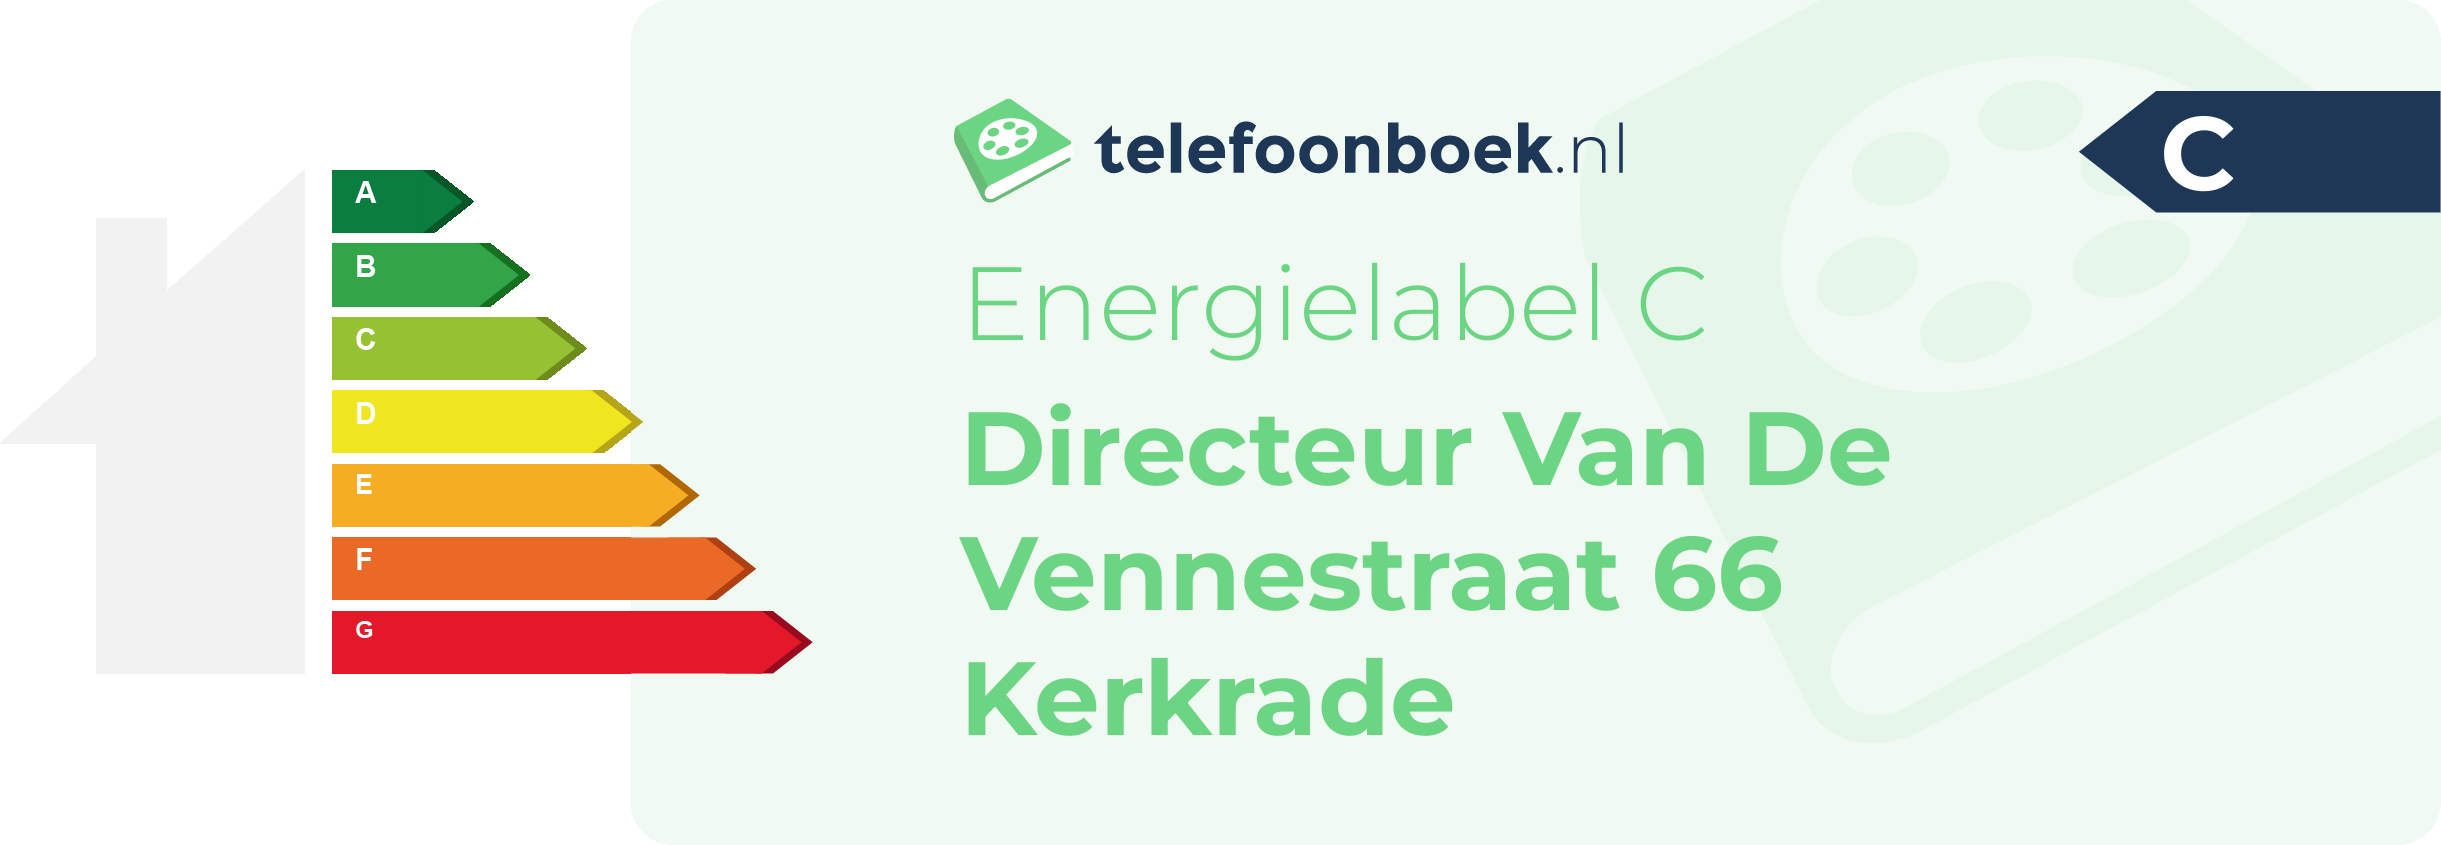 Energielabel Directeur Van De Vennestraat 66 Kerkrade